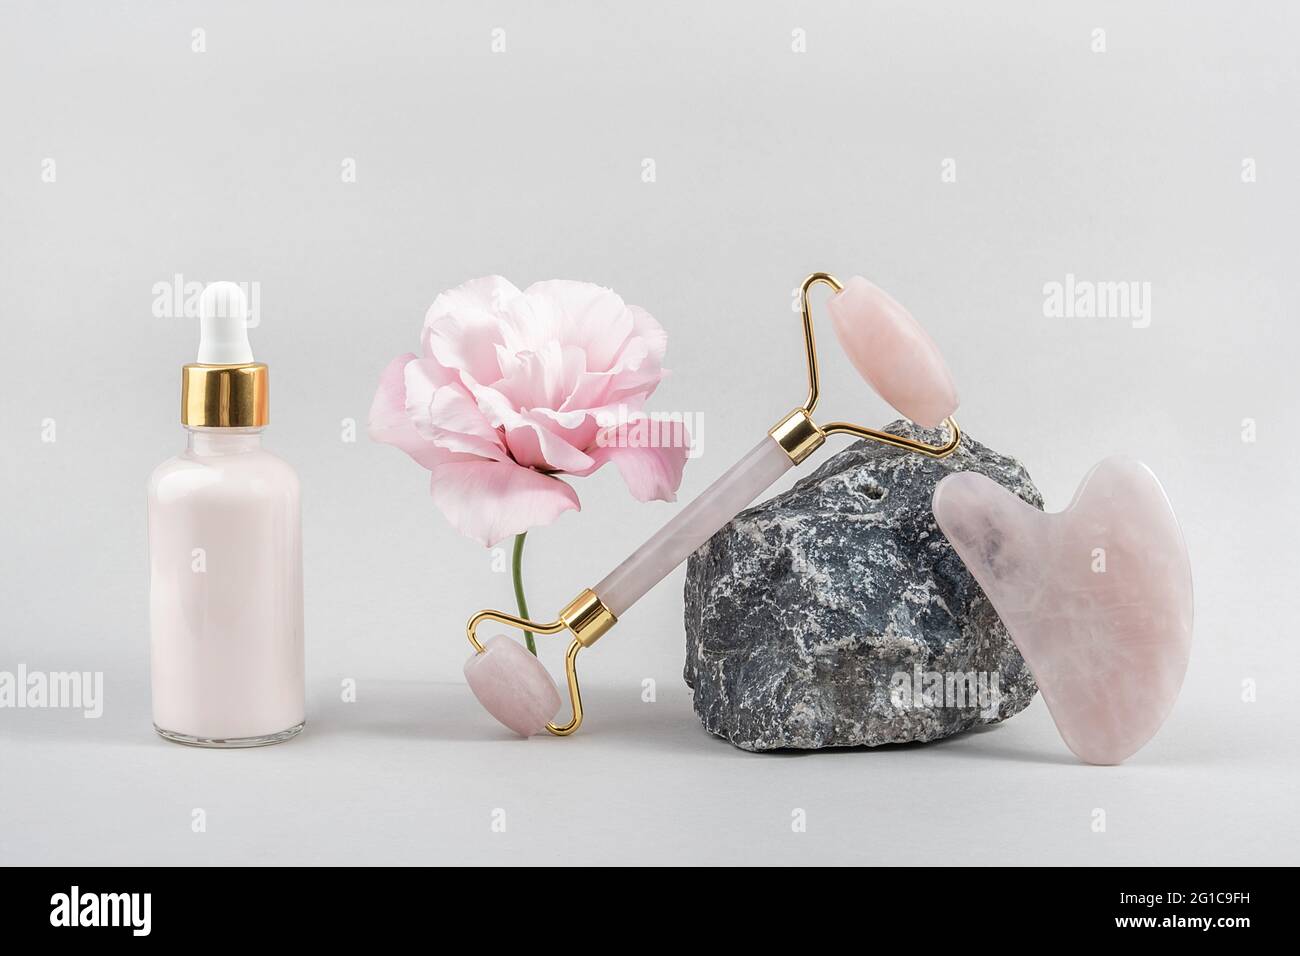 Rouleau facial en quartz rose cristal, flacon compte-gouttes cosmétique sur pierre et belle fleur sur fond gris. Massage du visage pour une levée naturelle, beaut Banque D'Images